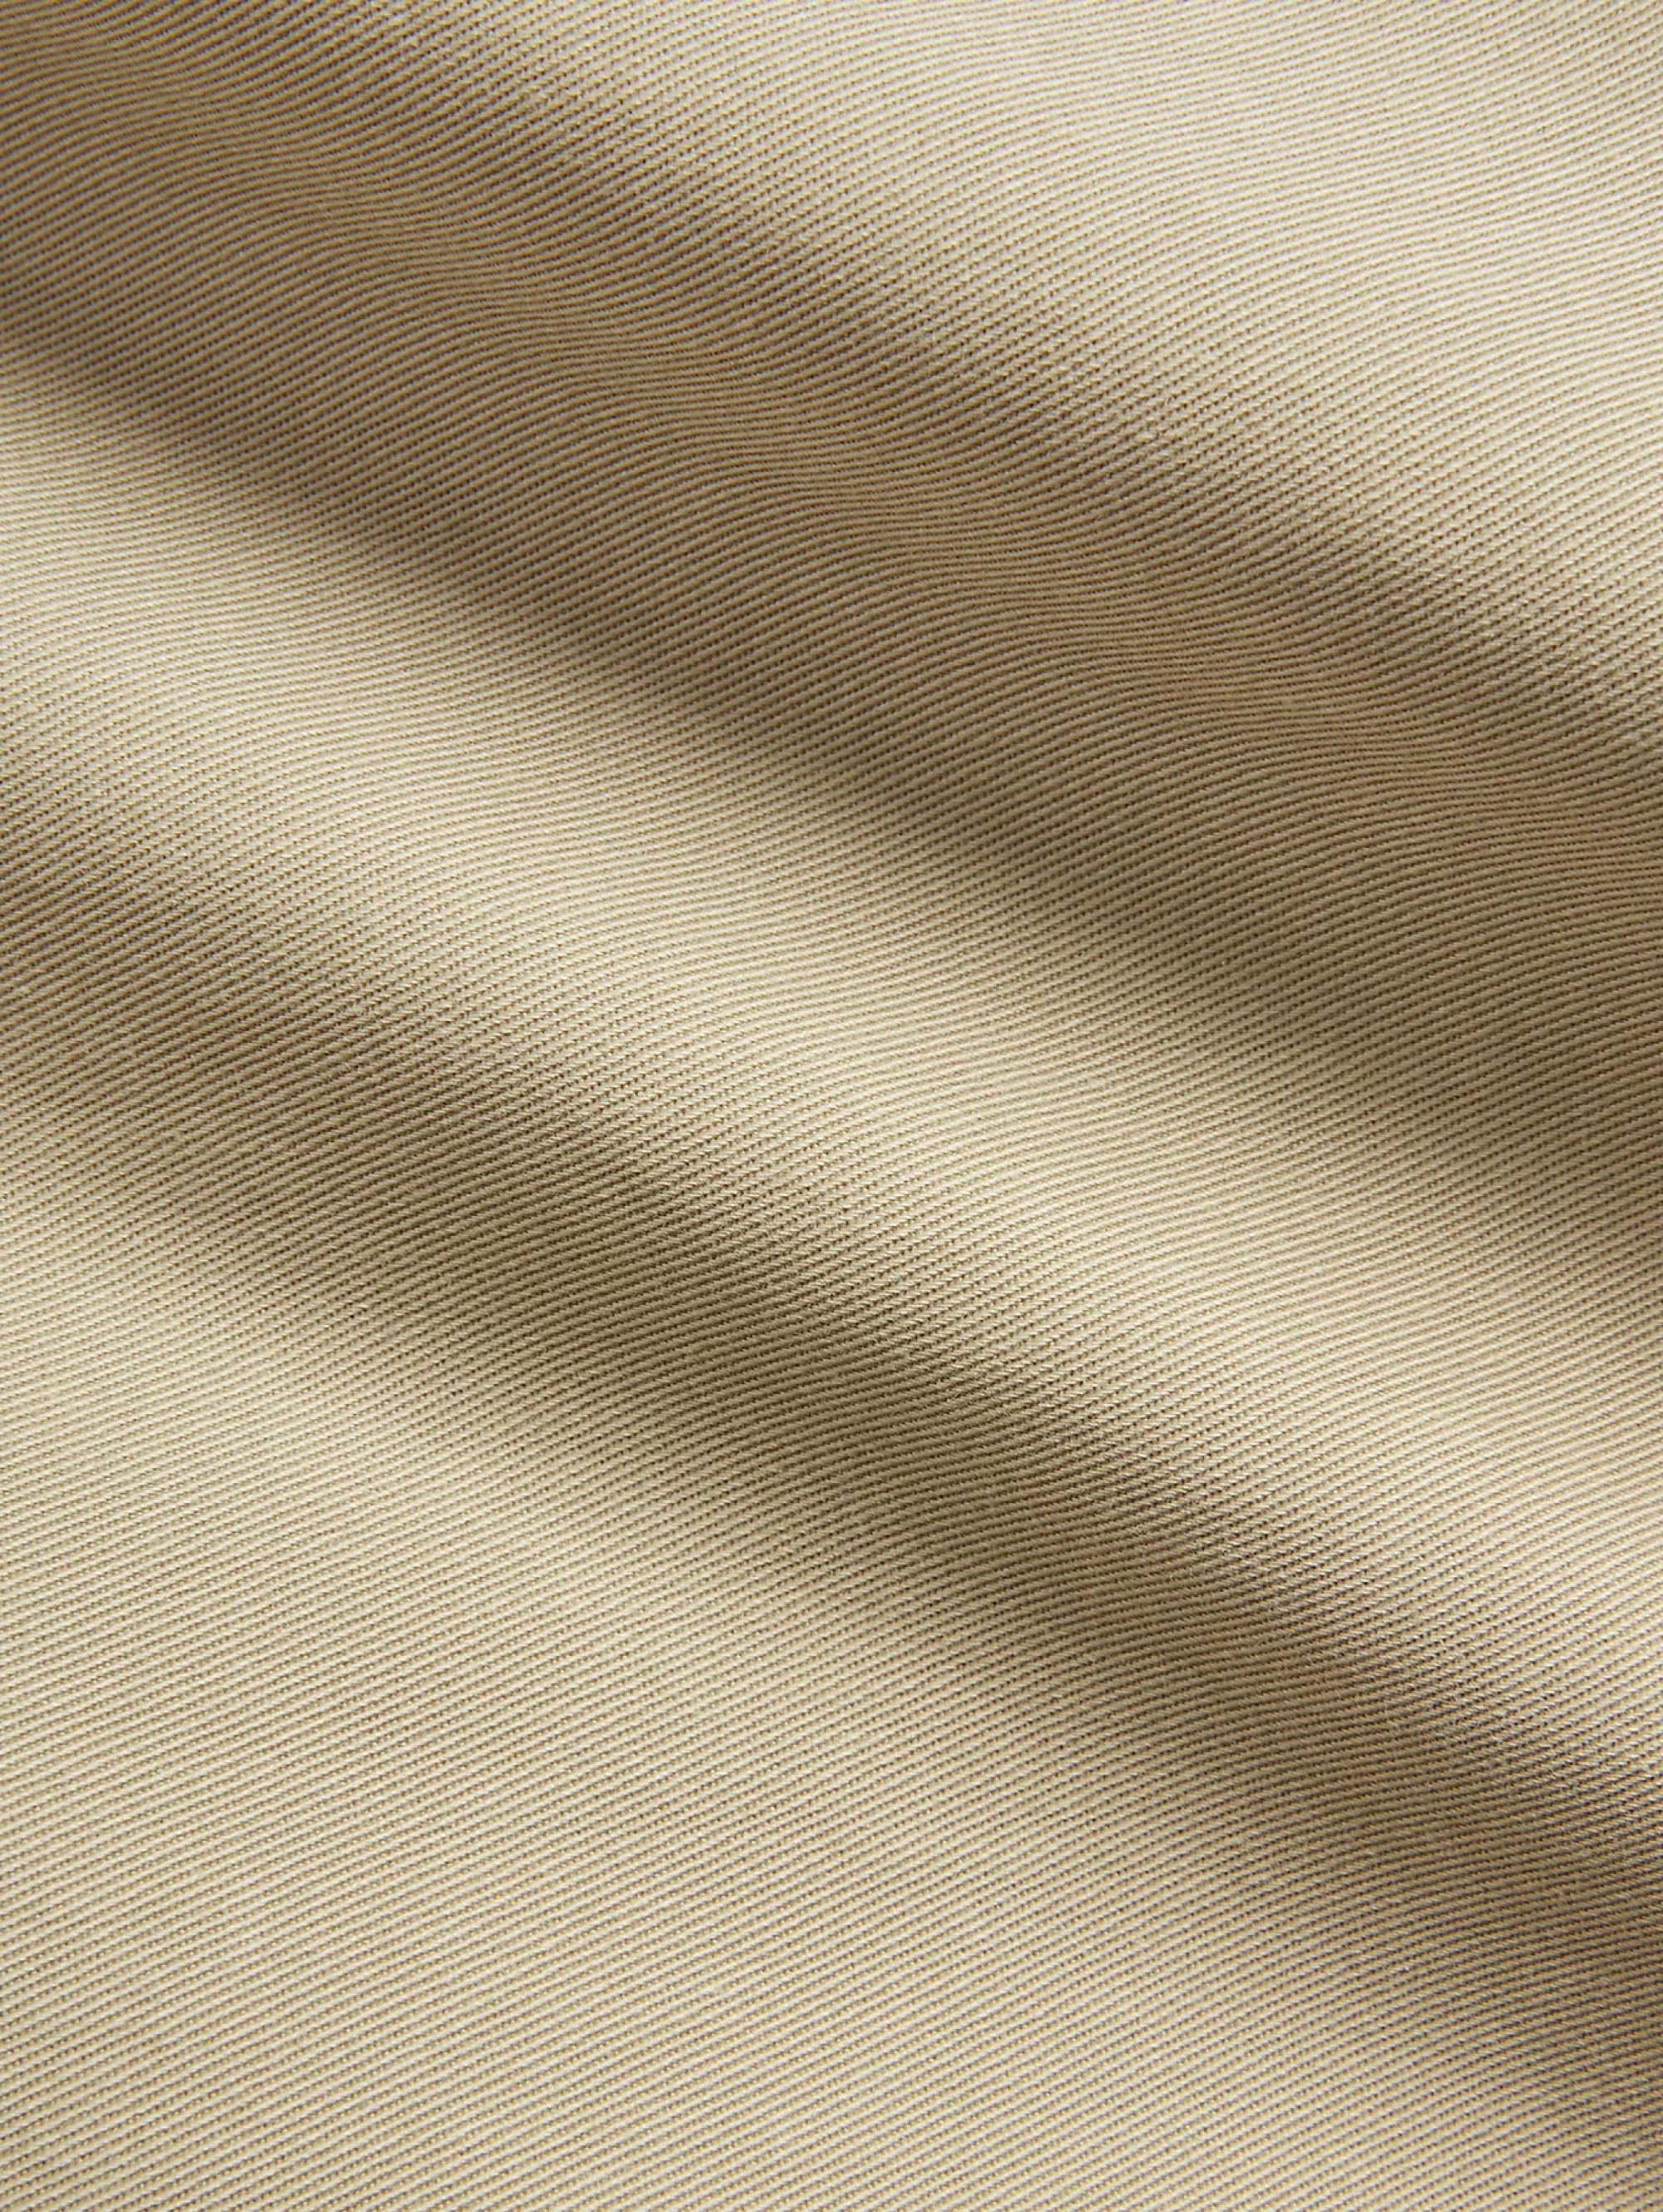 Khakifarbenes Twillhemd mit aufgesetzten Taschen